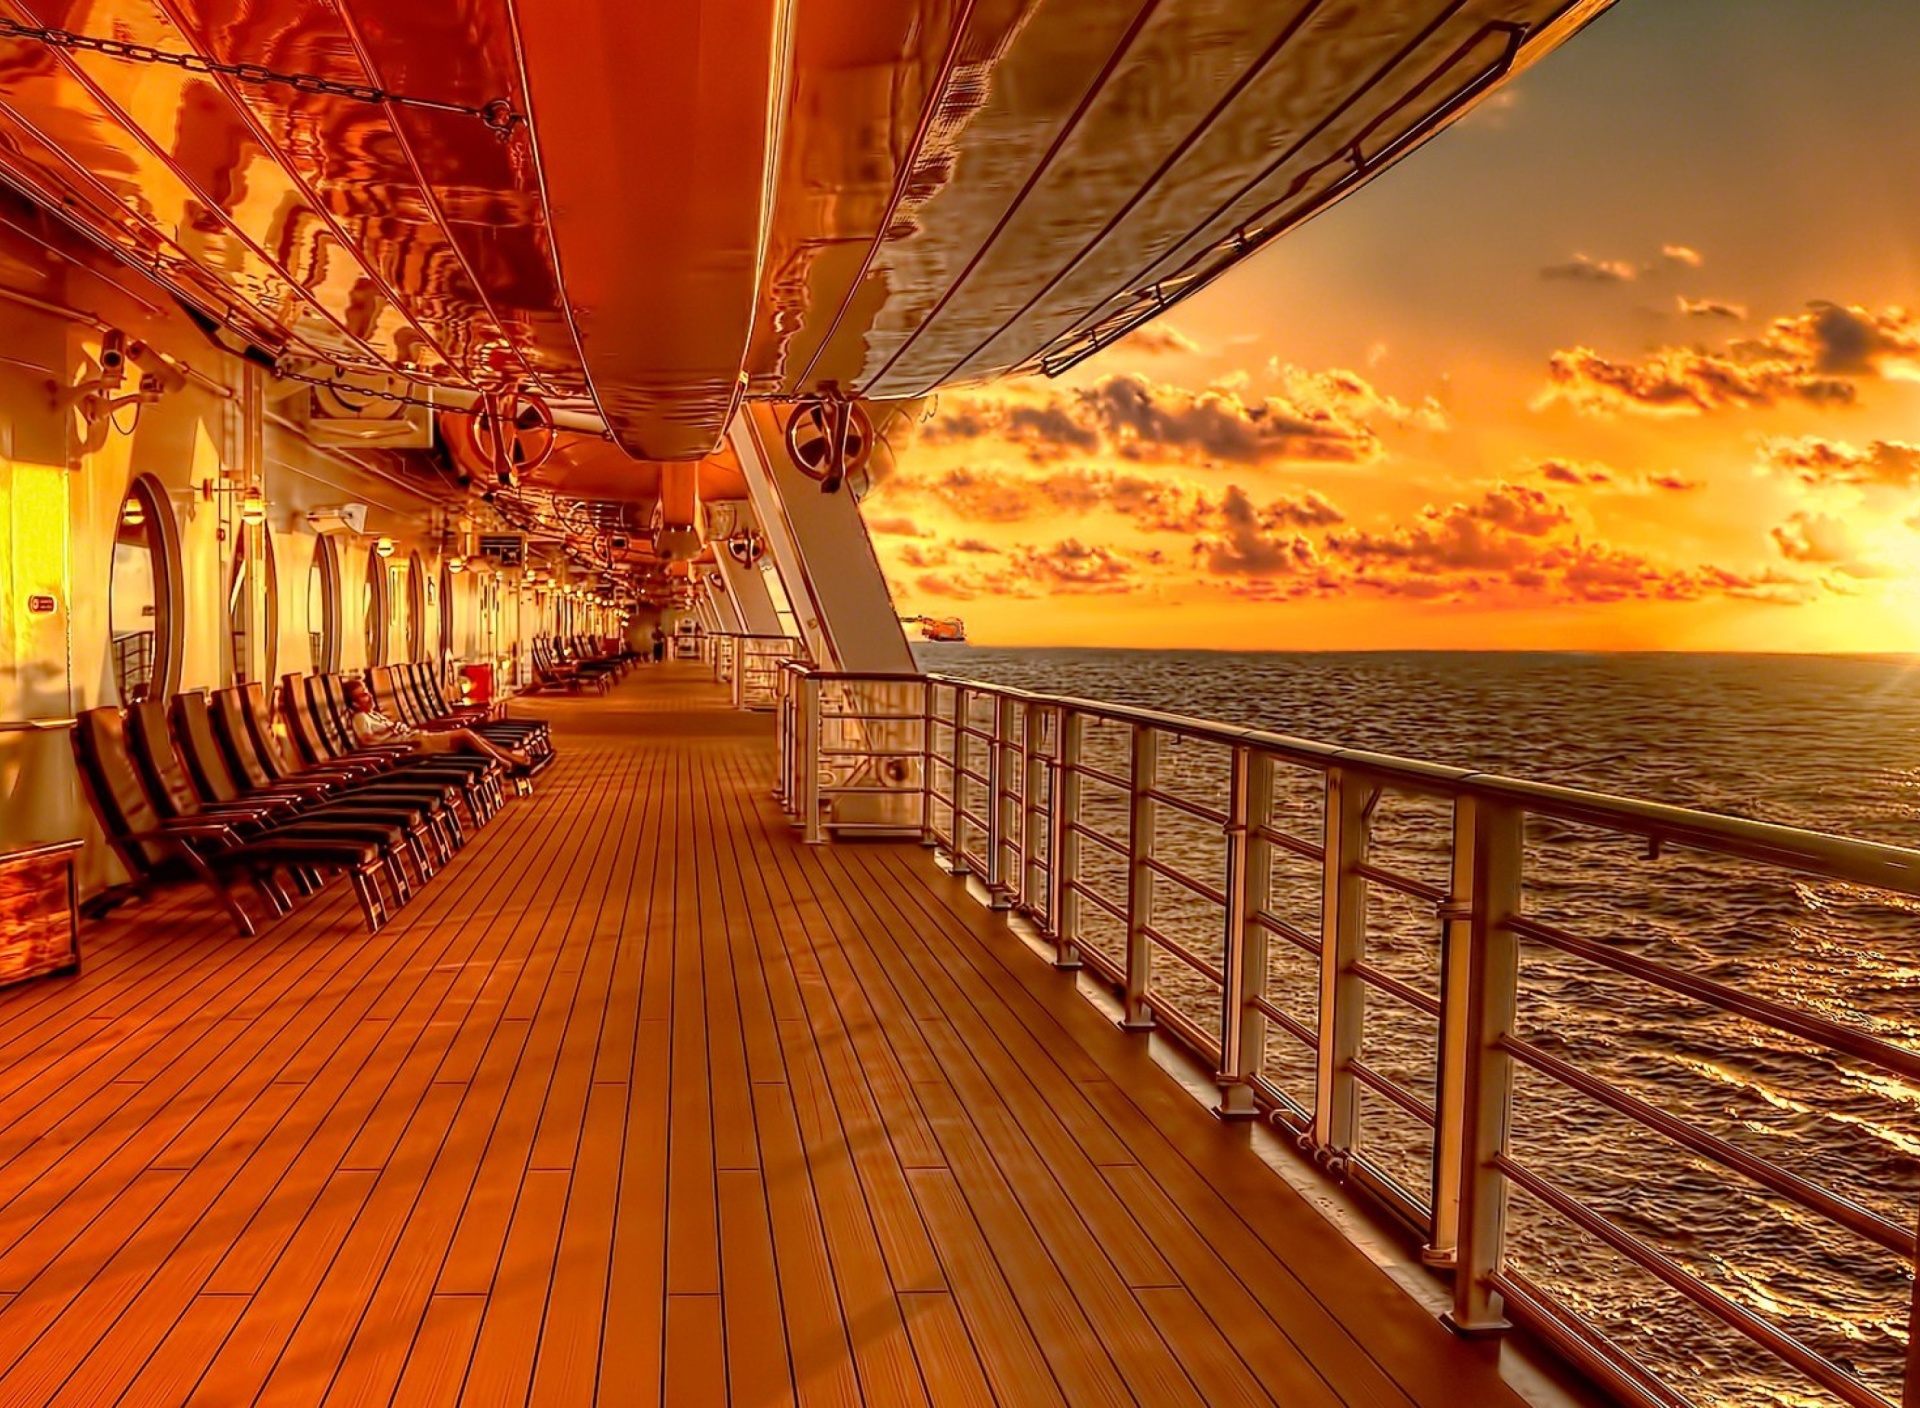 Обои Sunset on posh cruise ship 1920x1408